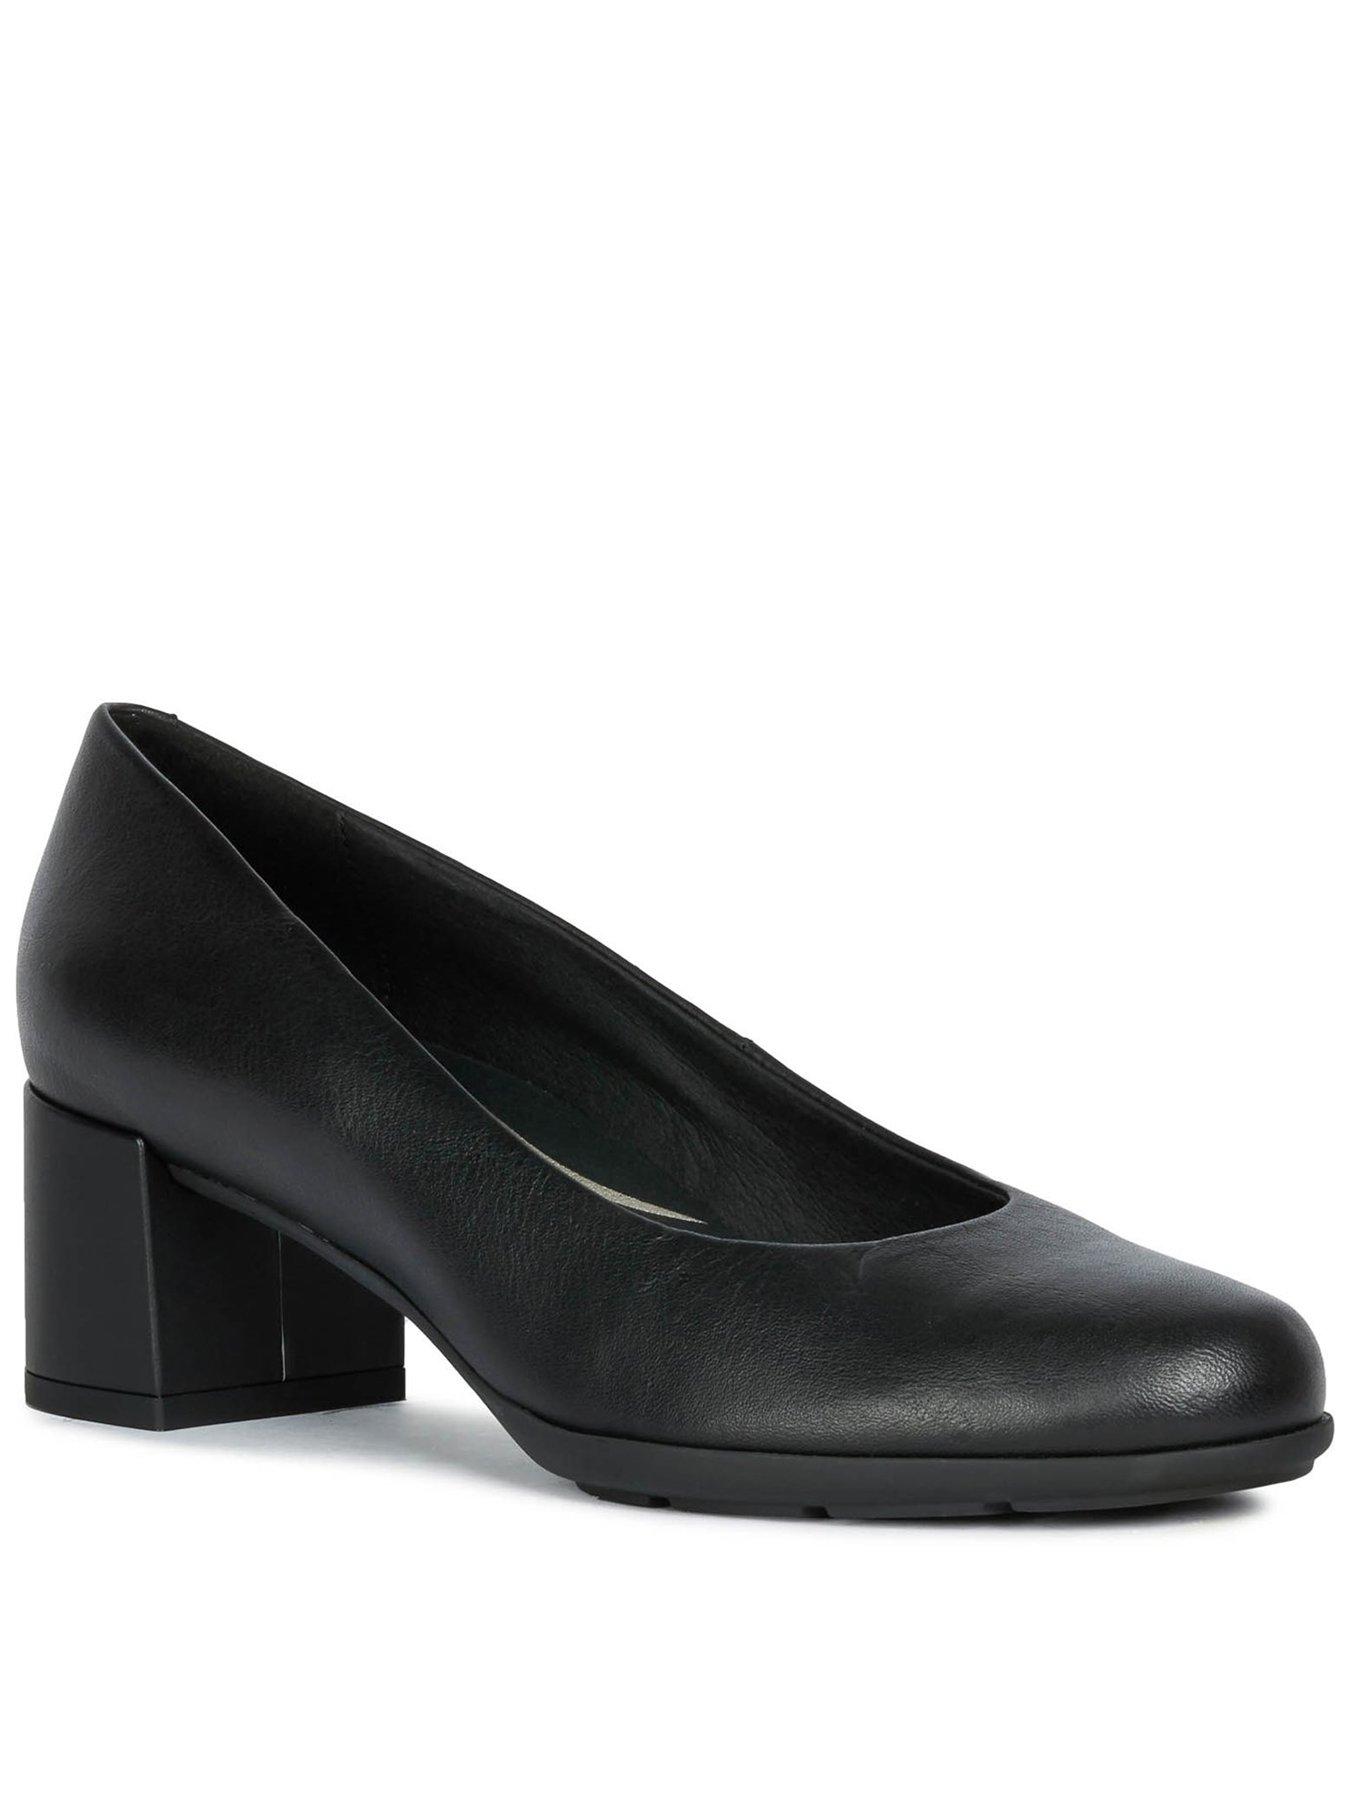 3.5 inch court heels